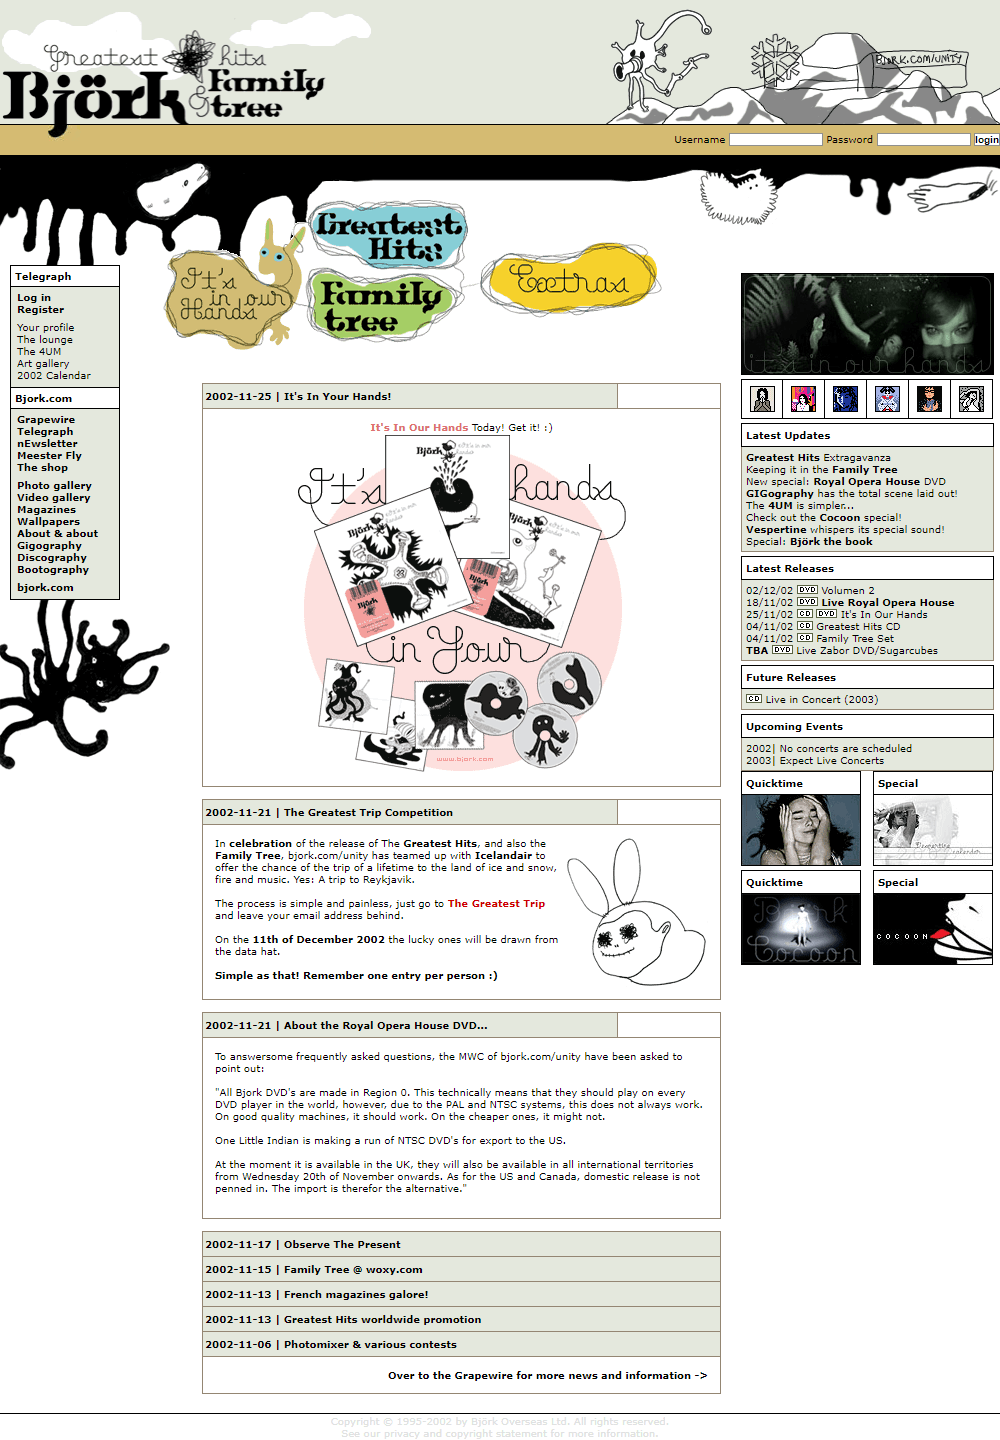 Björk website in 2002